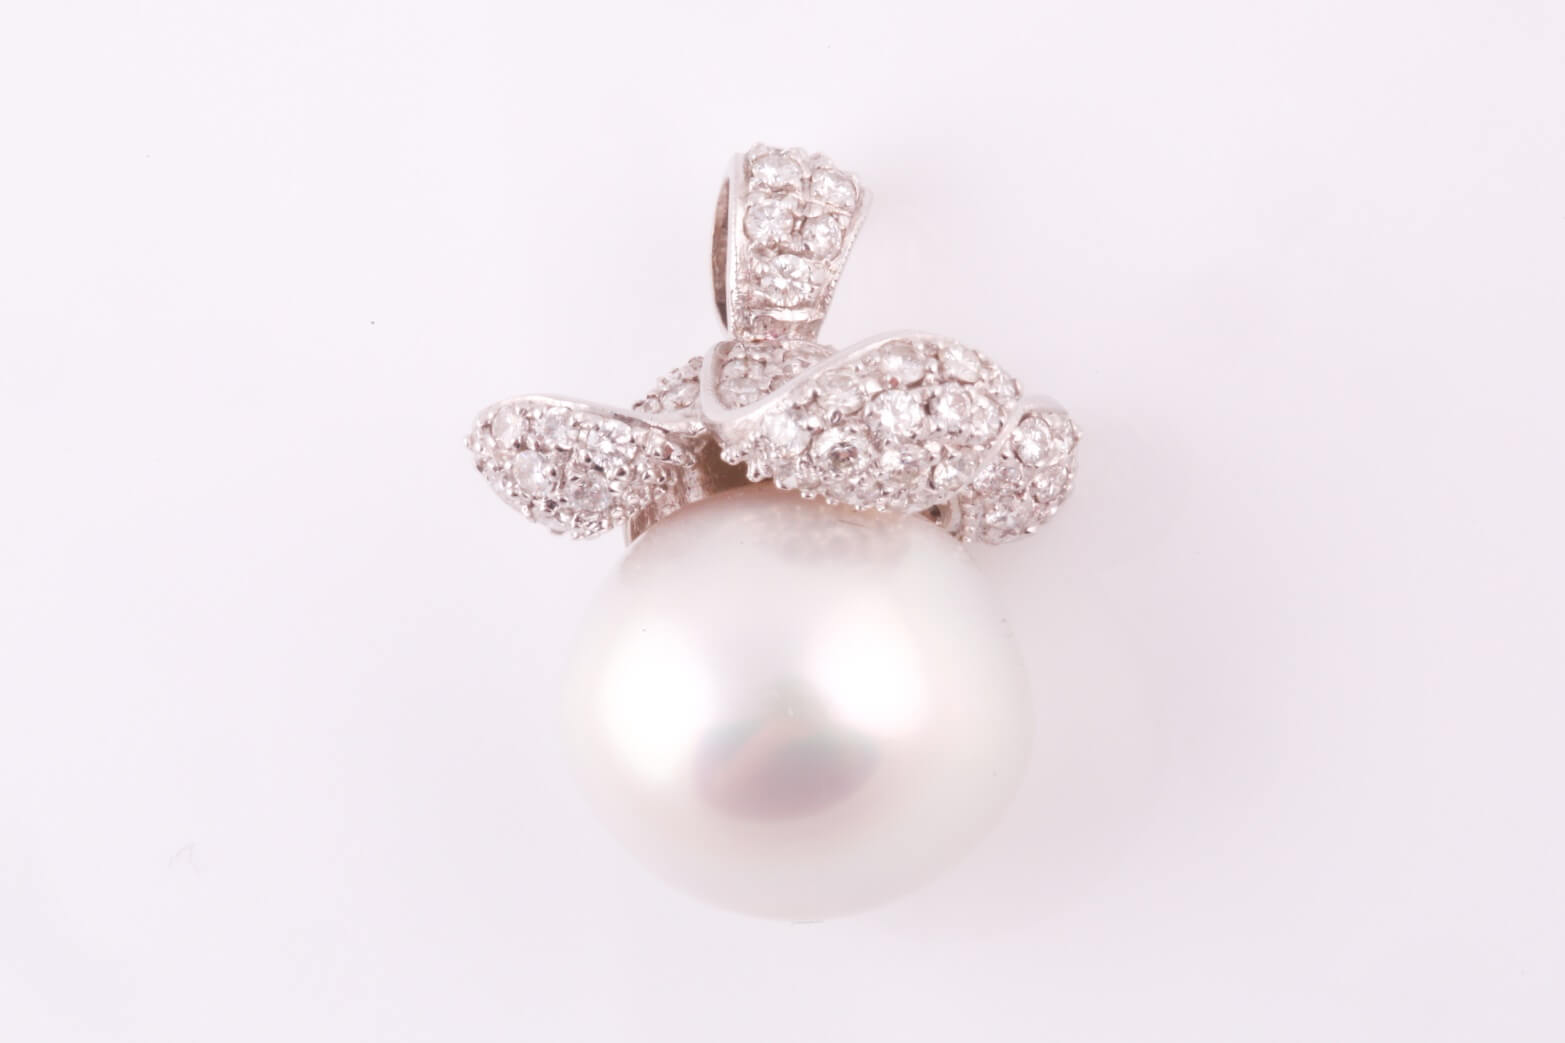 A South Sea pearl and diamond pendant